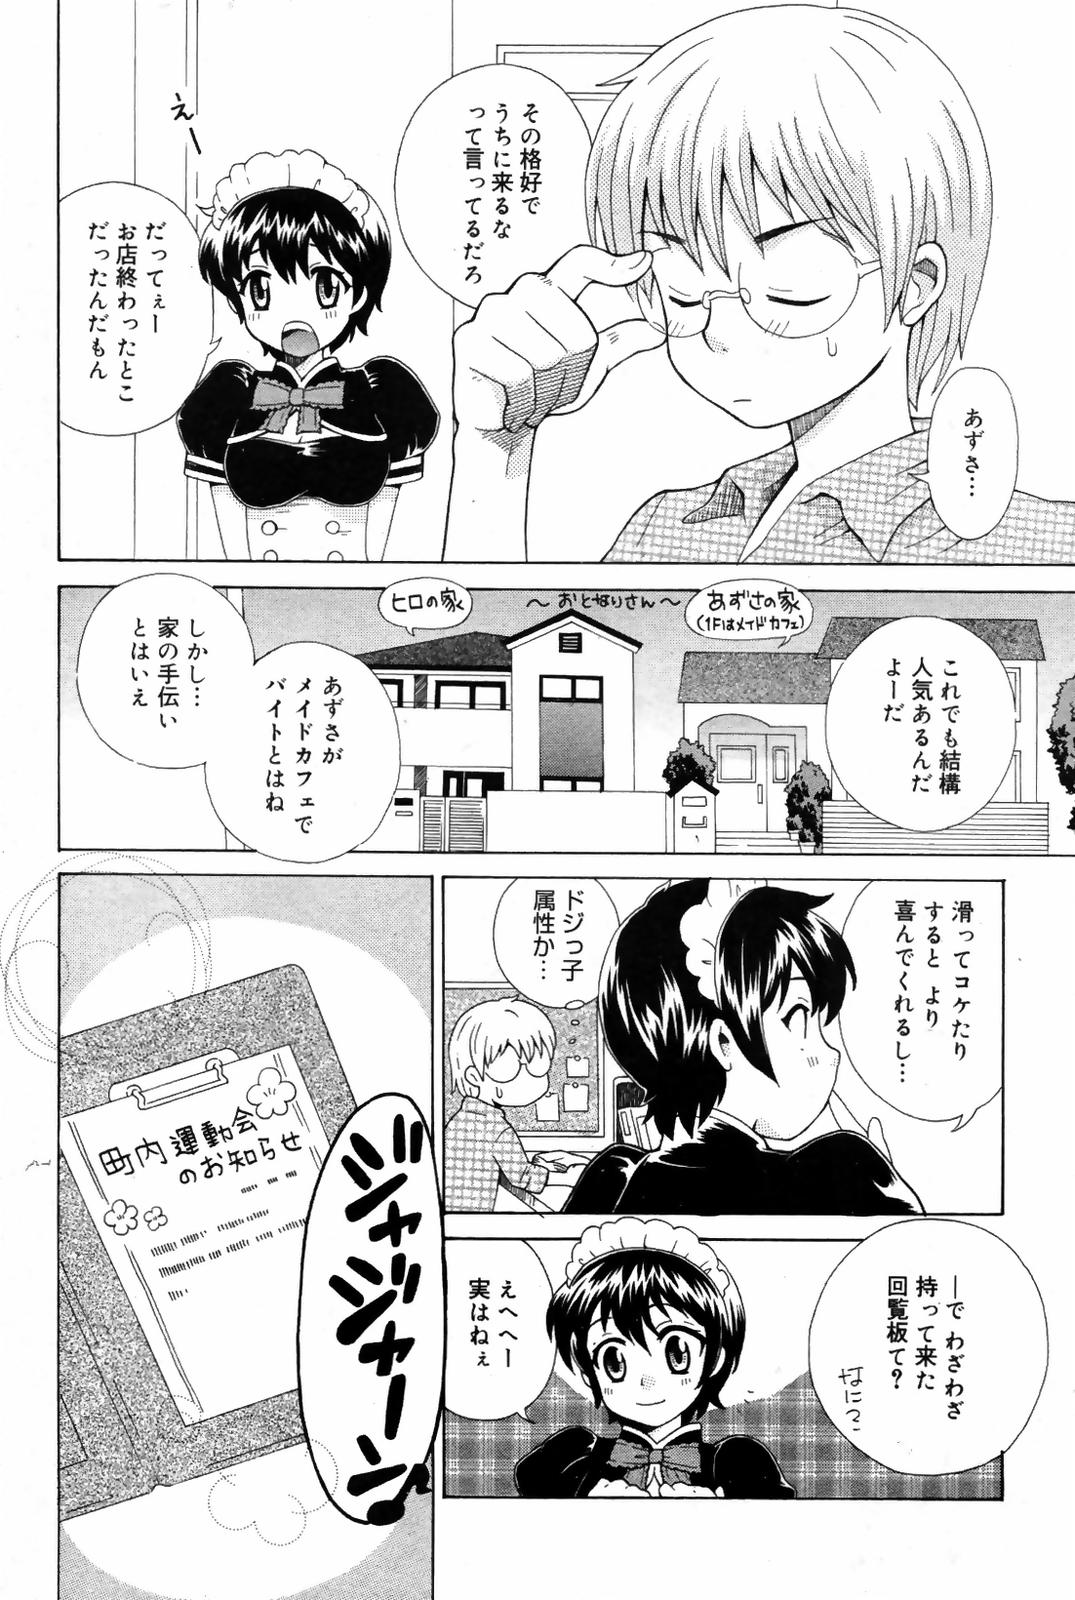 Manga Bangaichi 2007-10 漫画ばんがいち 2007年10月号